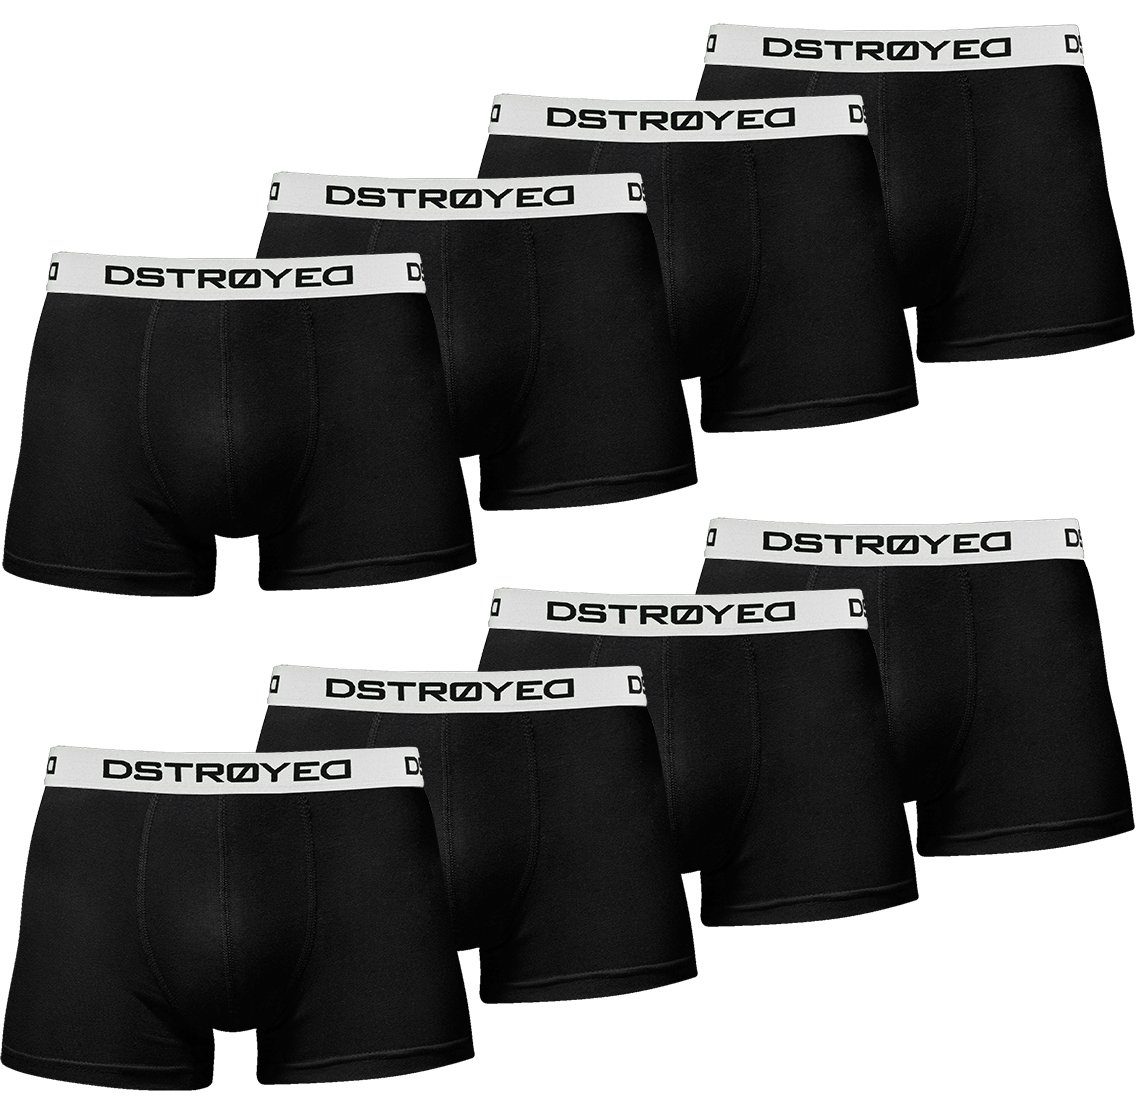 DSTROYED Boxershorts Herren Männer Unterhosen Baumwolle Premium Qualität perfekte Passform (Vorteilspack, 8er, 8er Pack) 315b-schwarz/weiß | Boxer anliegend